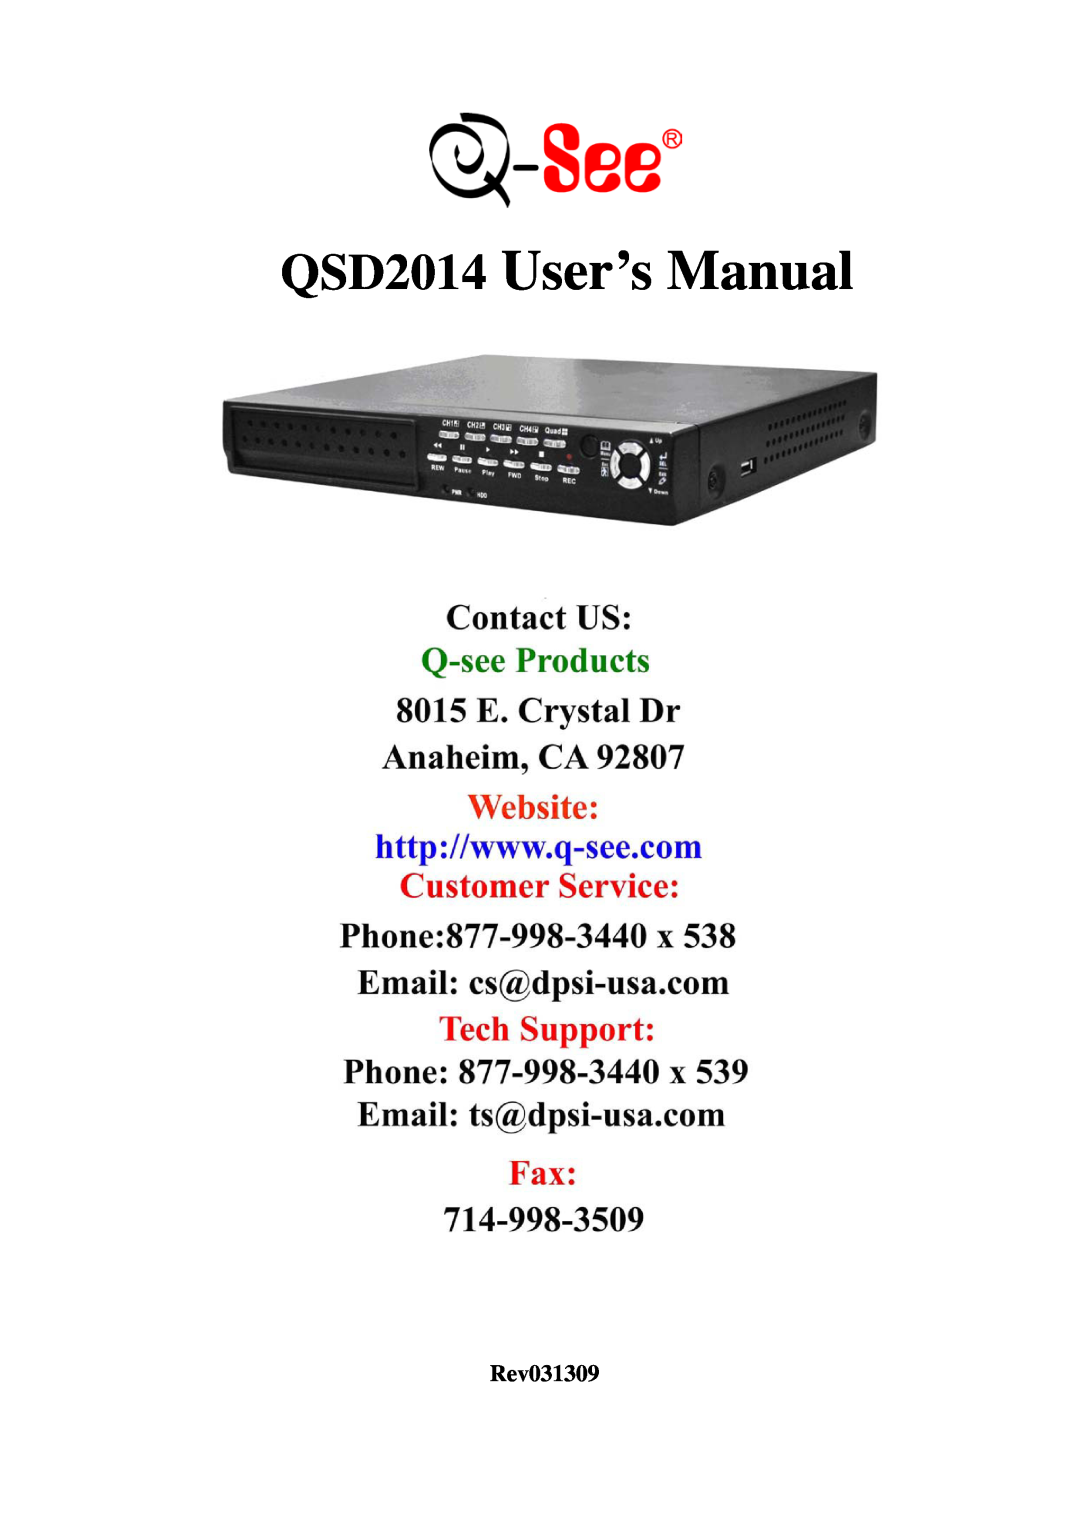 Q-See user manual QSD2014 User’s Manual, Rev031309 